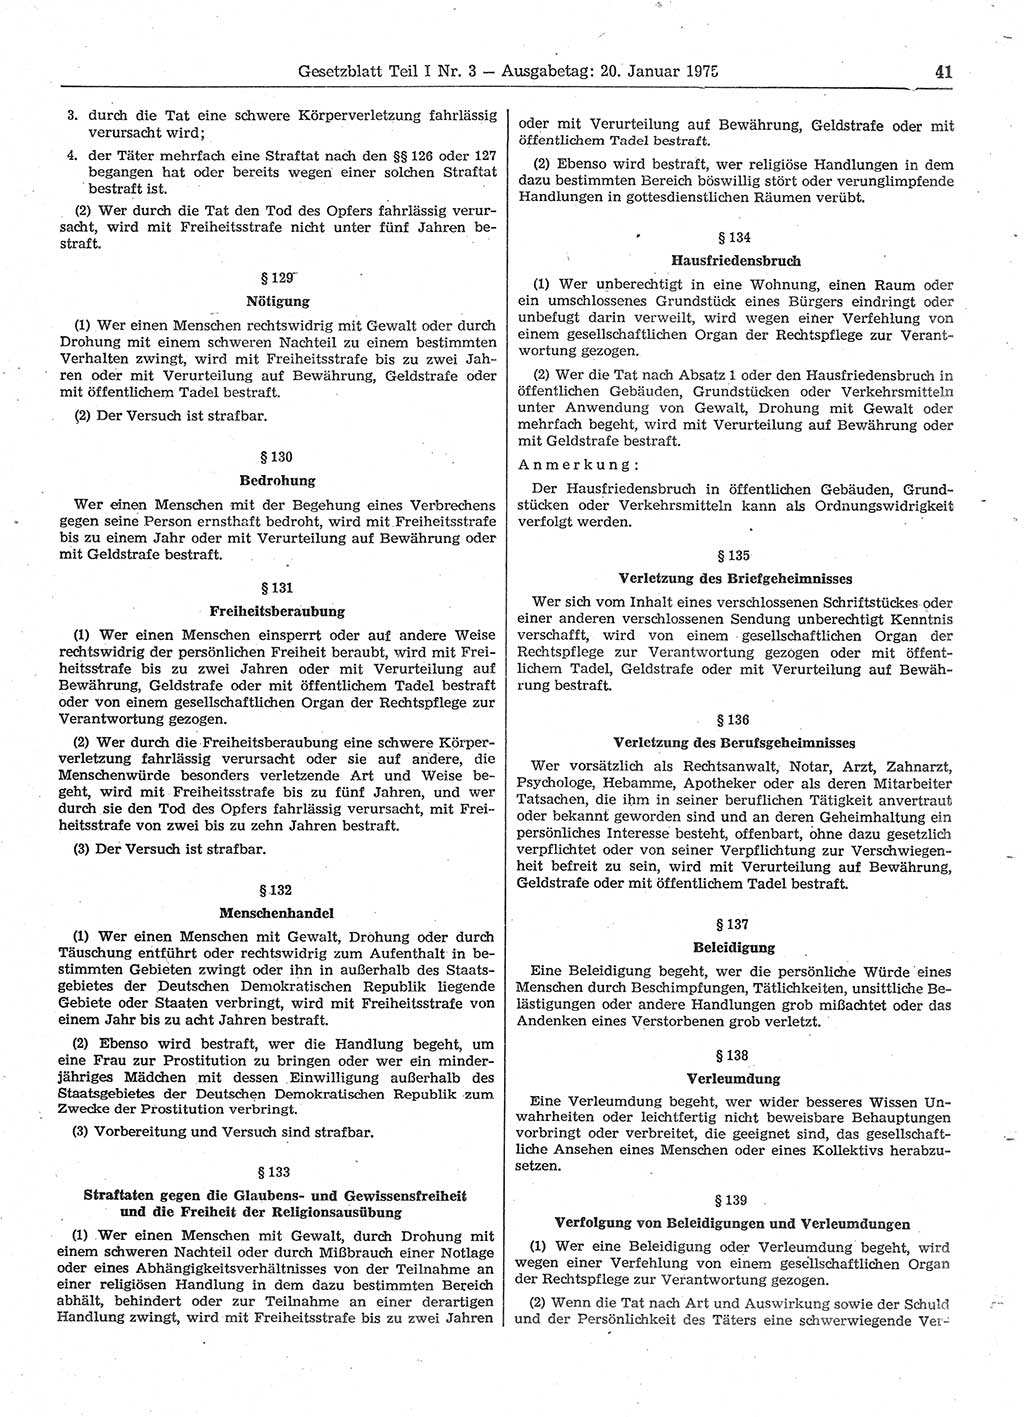 Gesetzblatt (GBl.) der Deutschen Demokratischen Republik (DDR) Teil Ⅰ 1975, Seite 41 (GBl. DDR Ⅰ 1975, S. 41)